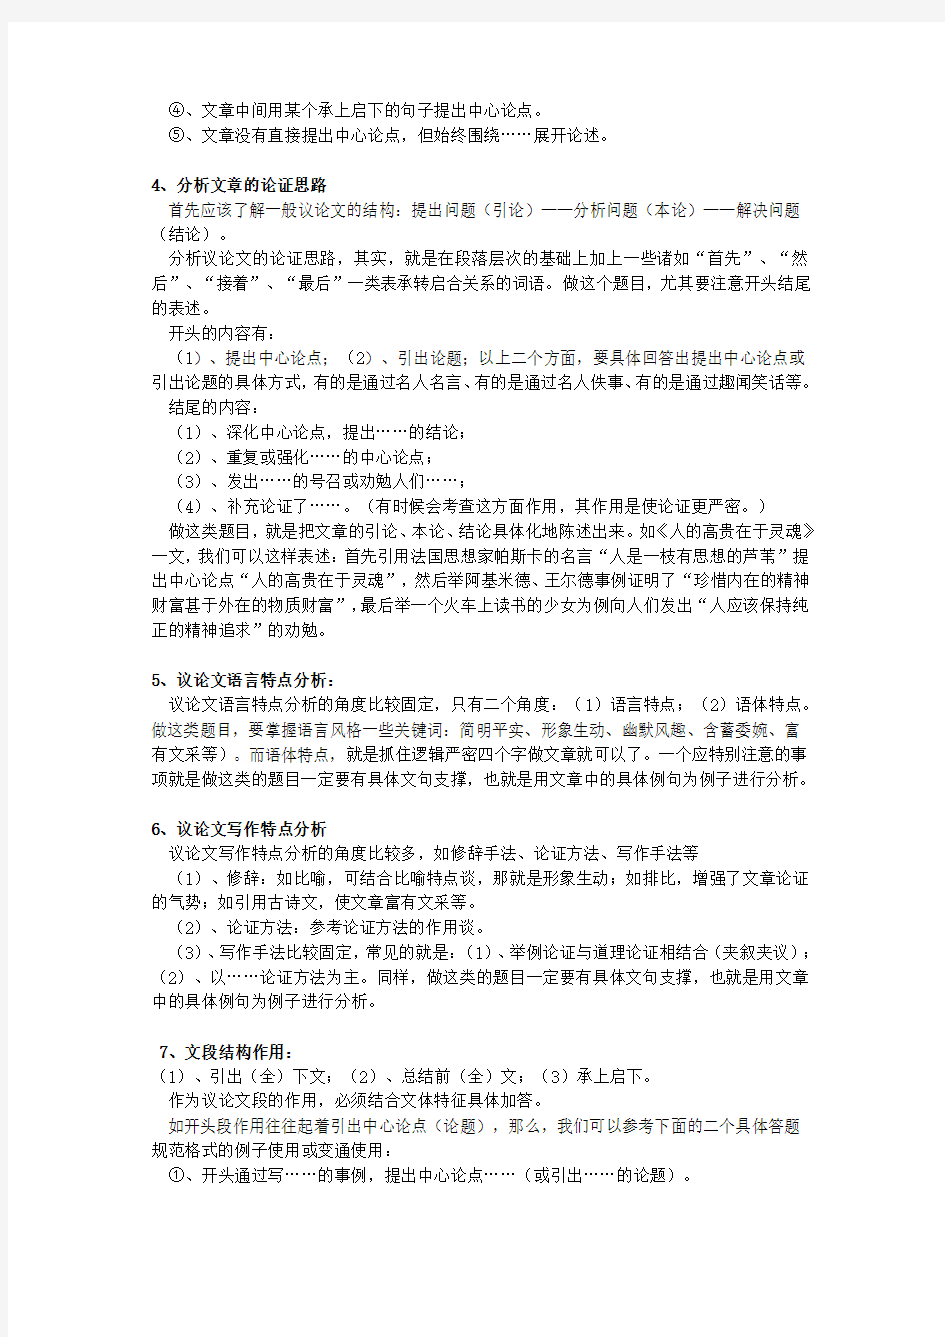 初中语文议论文阅读答题技巧与练习 完整版